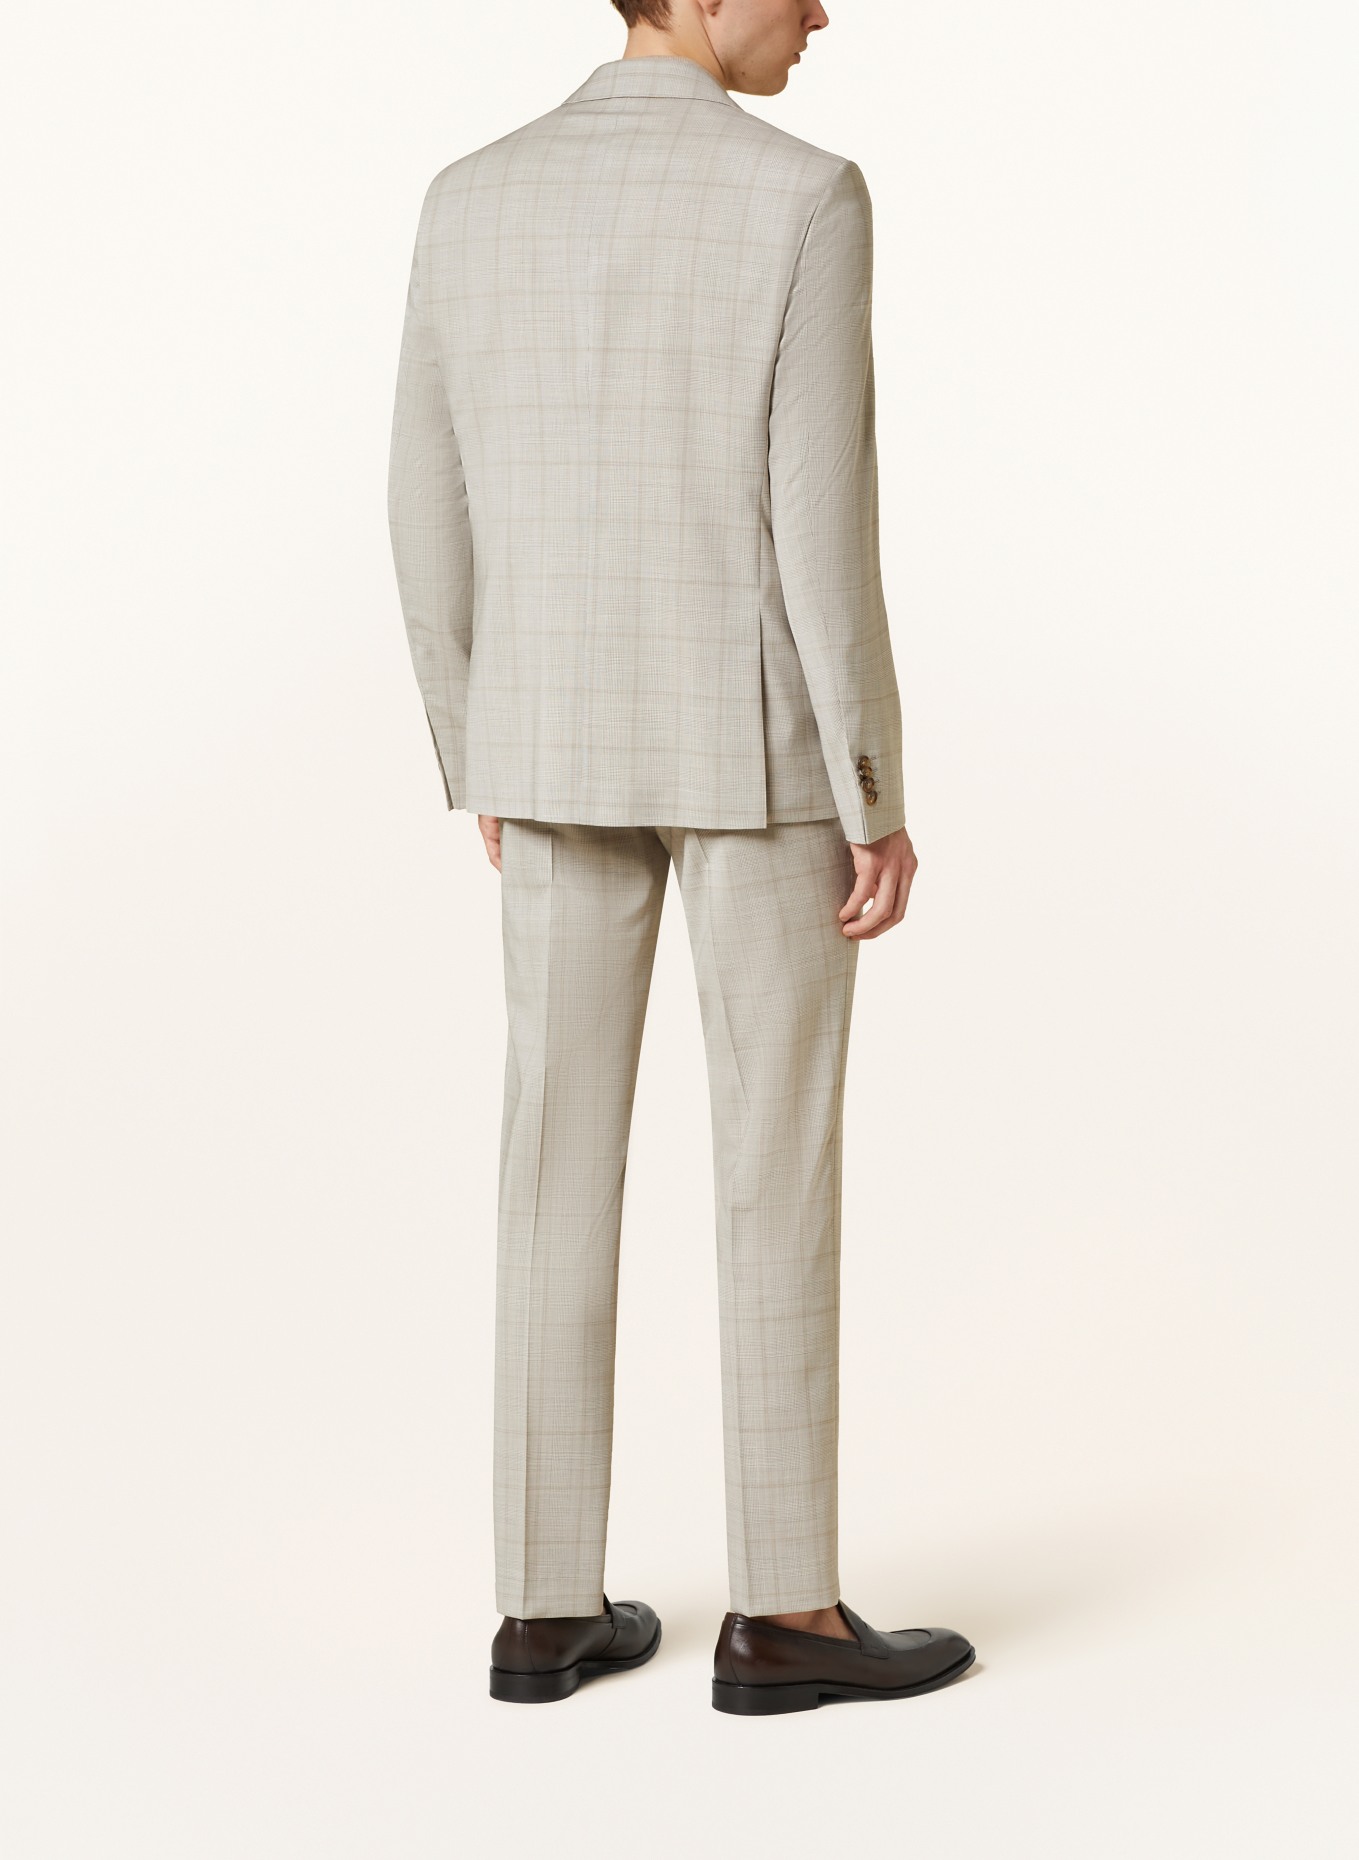 SAND COPENHAGEN Suit jacket SHERMAN NAPOLI classic fit, Color: 220 hellbeige (Image 3)